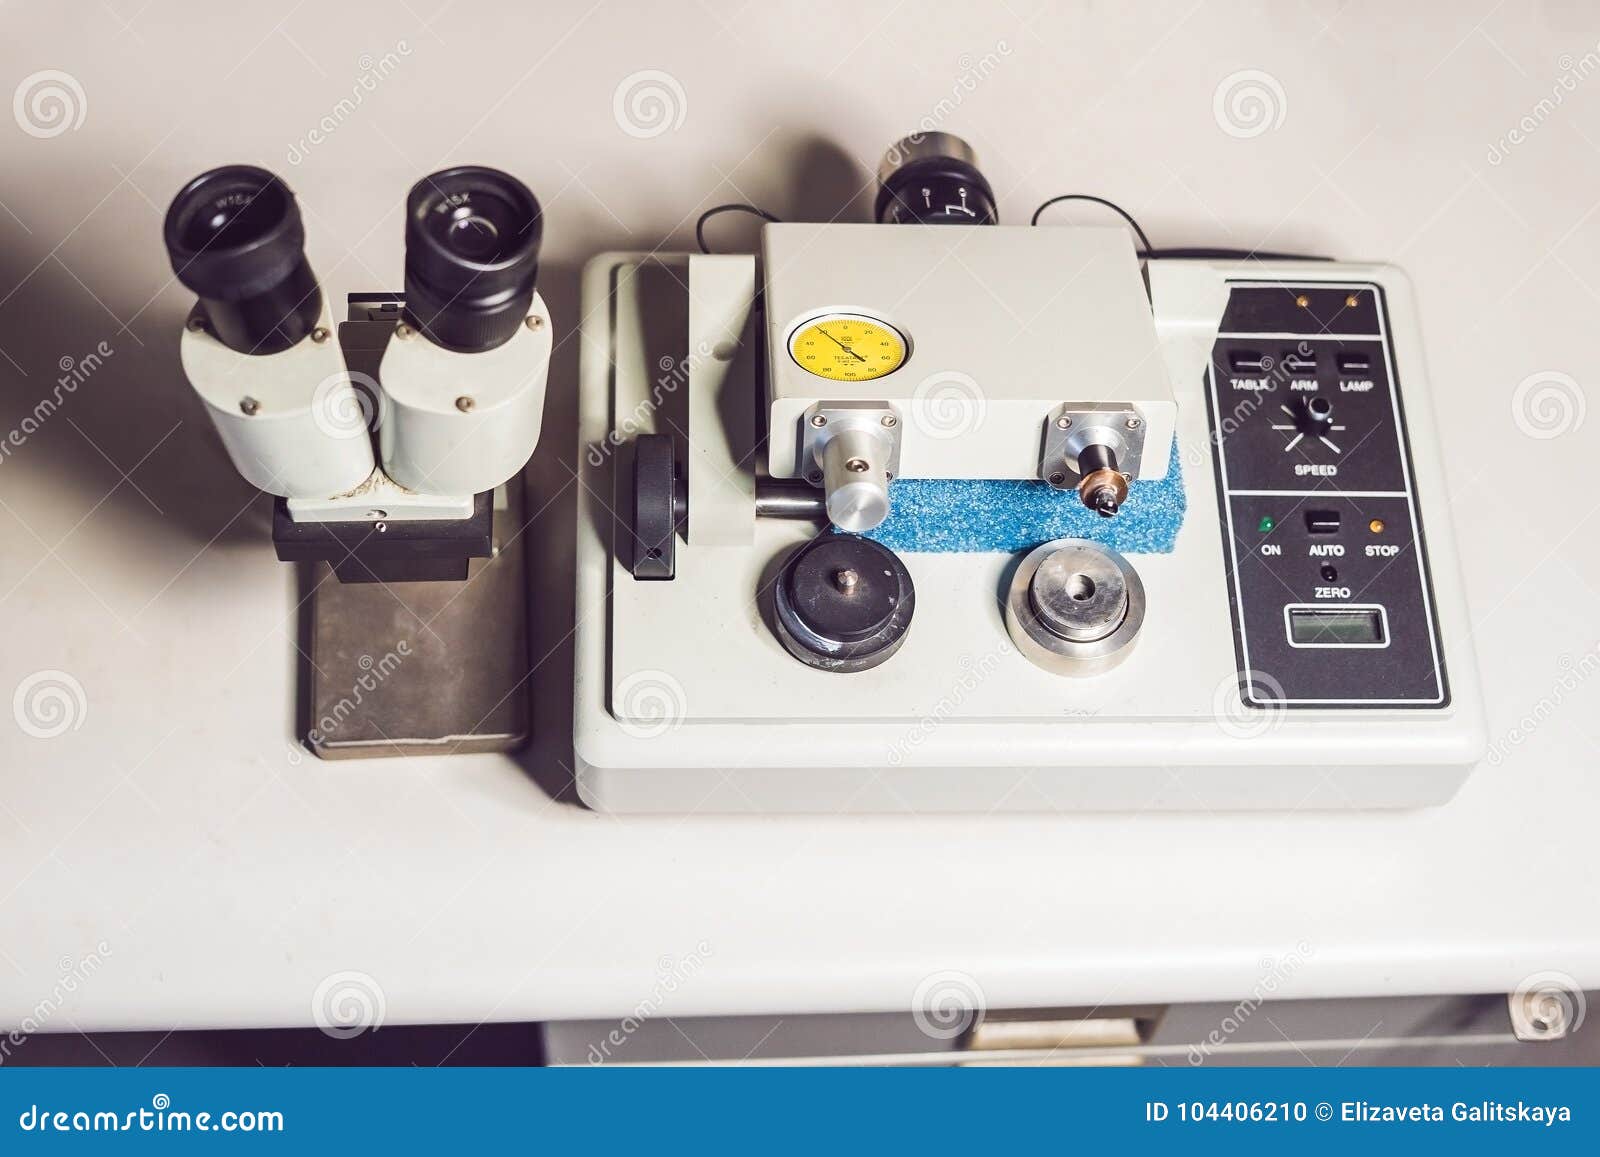 Máquina de lustro do moedor do micrômetro da precisão com um m ótico. Máquina de lustro do moedor do micrômetro da precisão da máquina de lustro do moedor do micrômetro da precisão que pode produzir a superfície lustrada para a investigação microscópica com um microscópio ótico que está perto